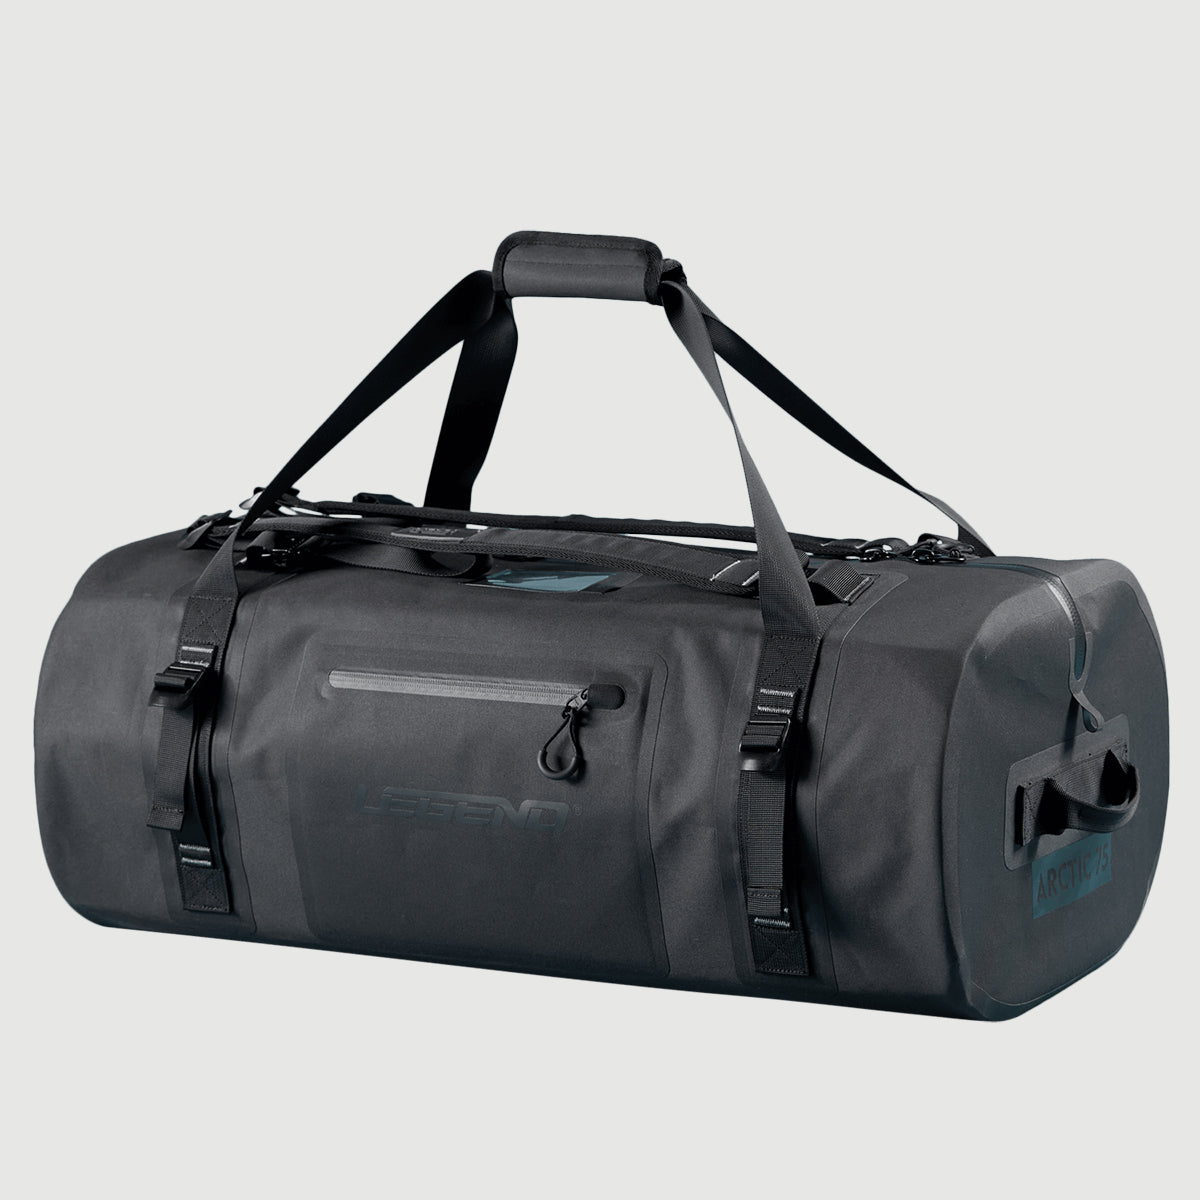 Arctic Waterproof Duffel Bag